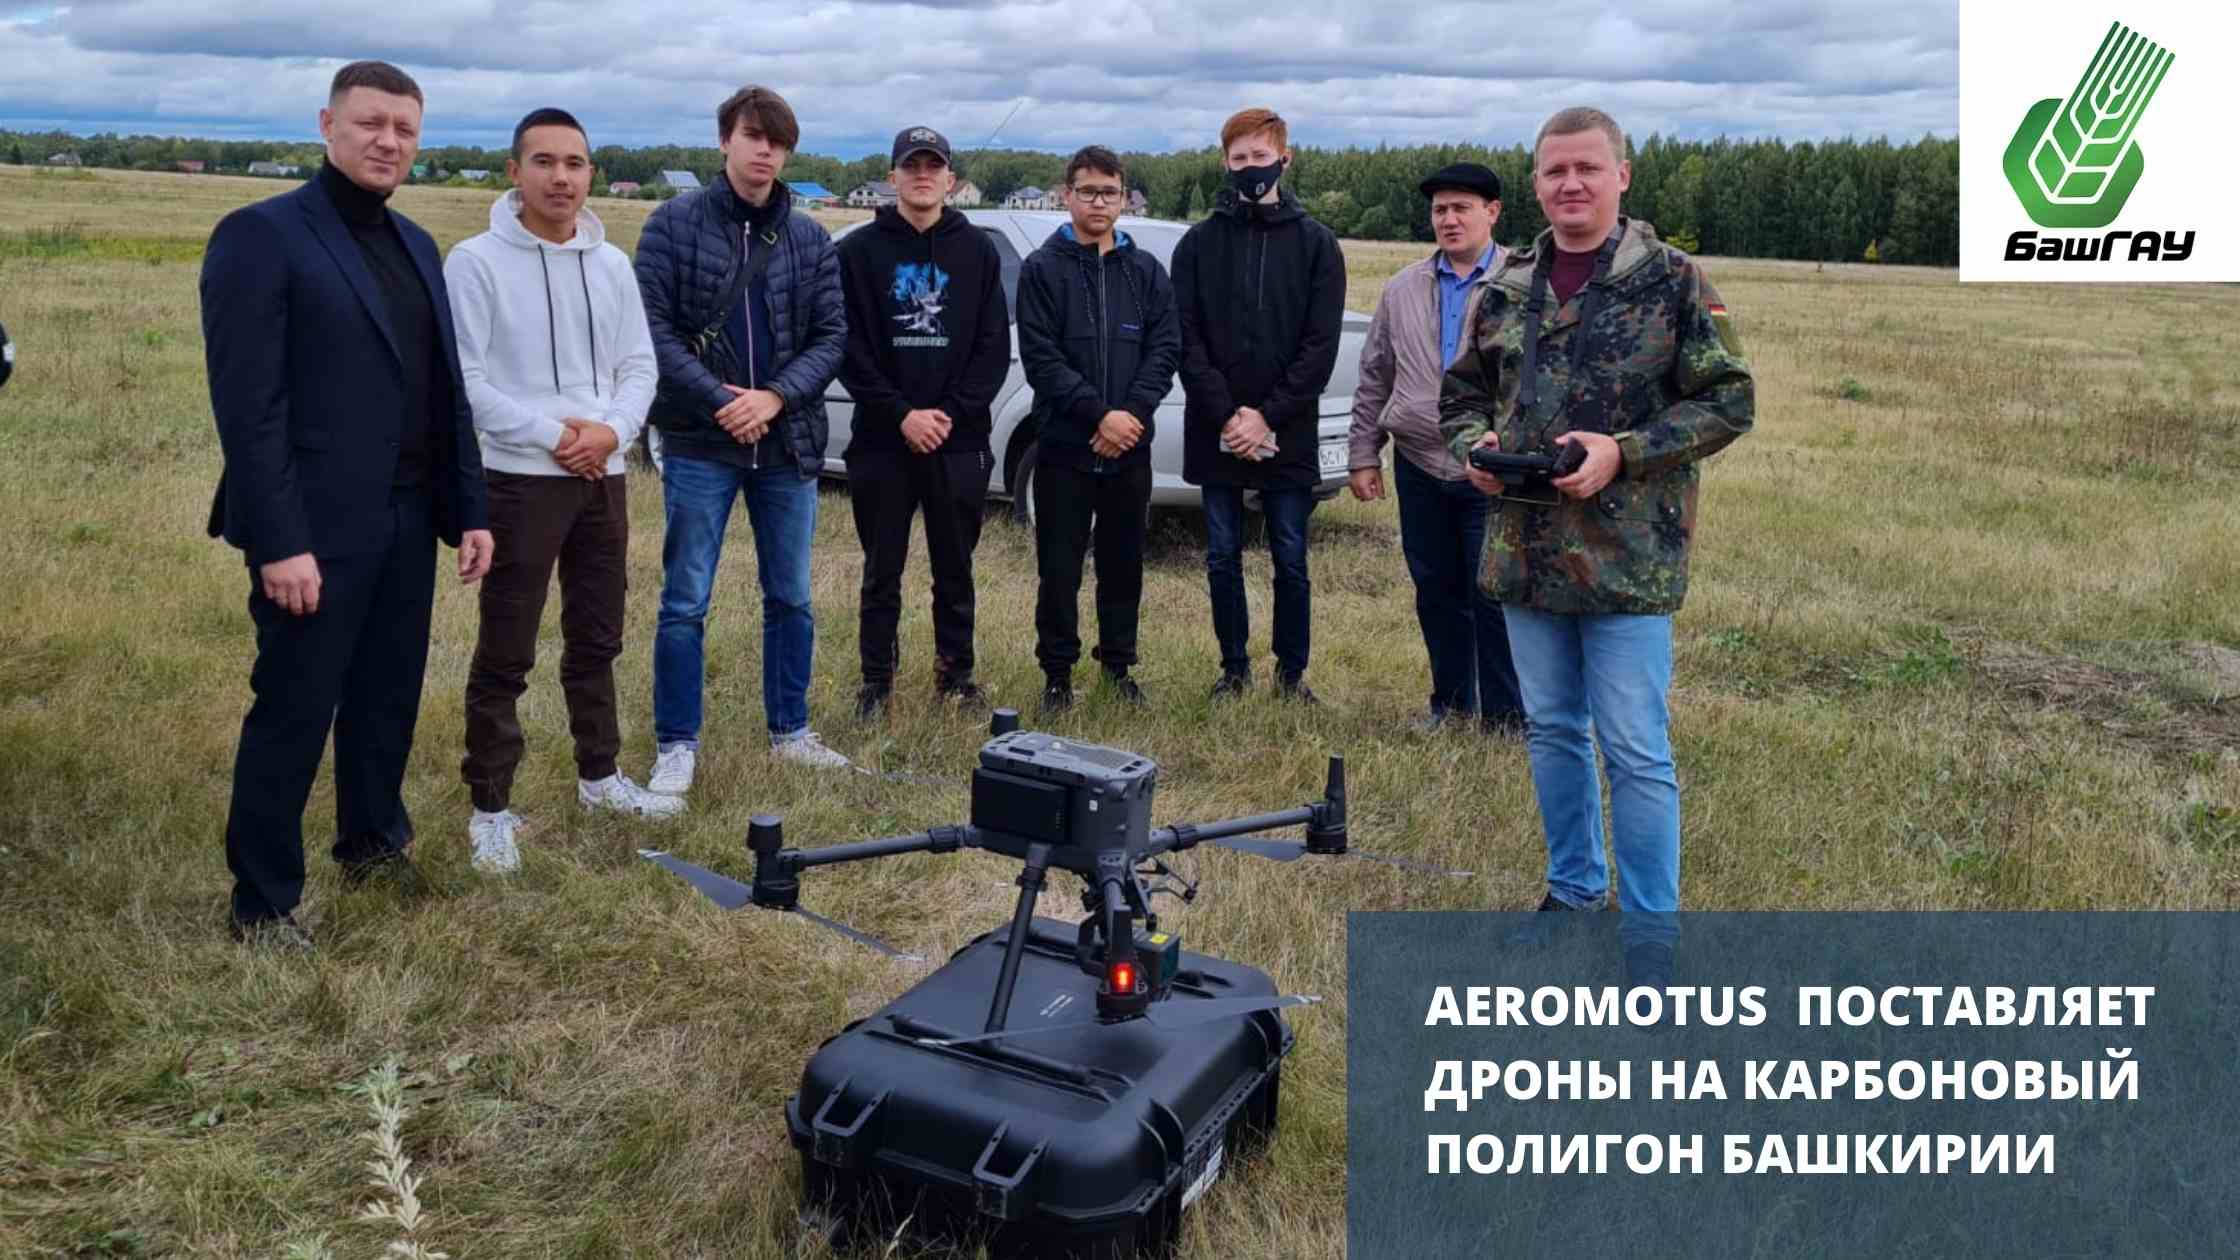 Aeromotus поставляет дроны на карбоновый полигон Башкирии - Экология